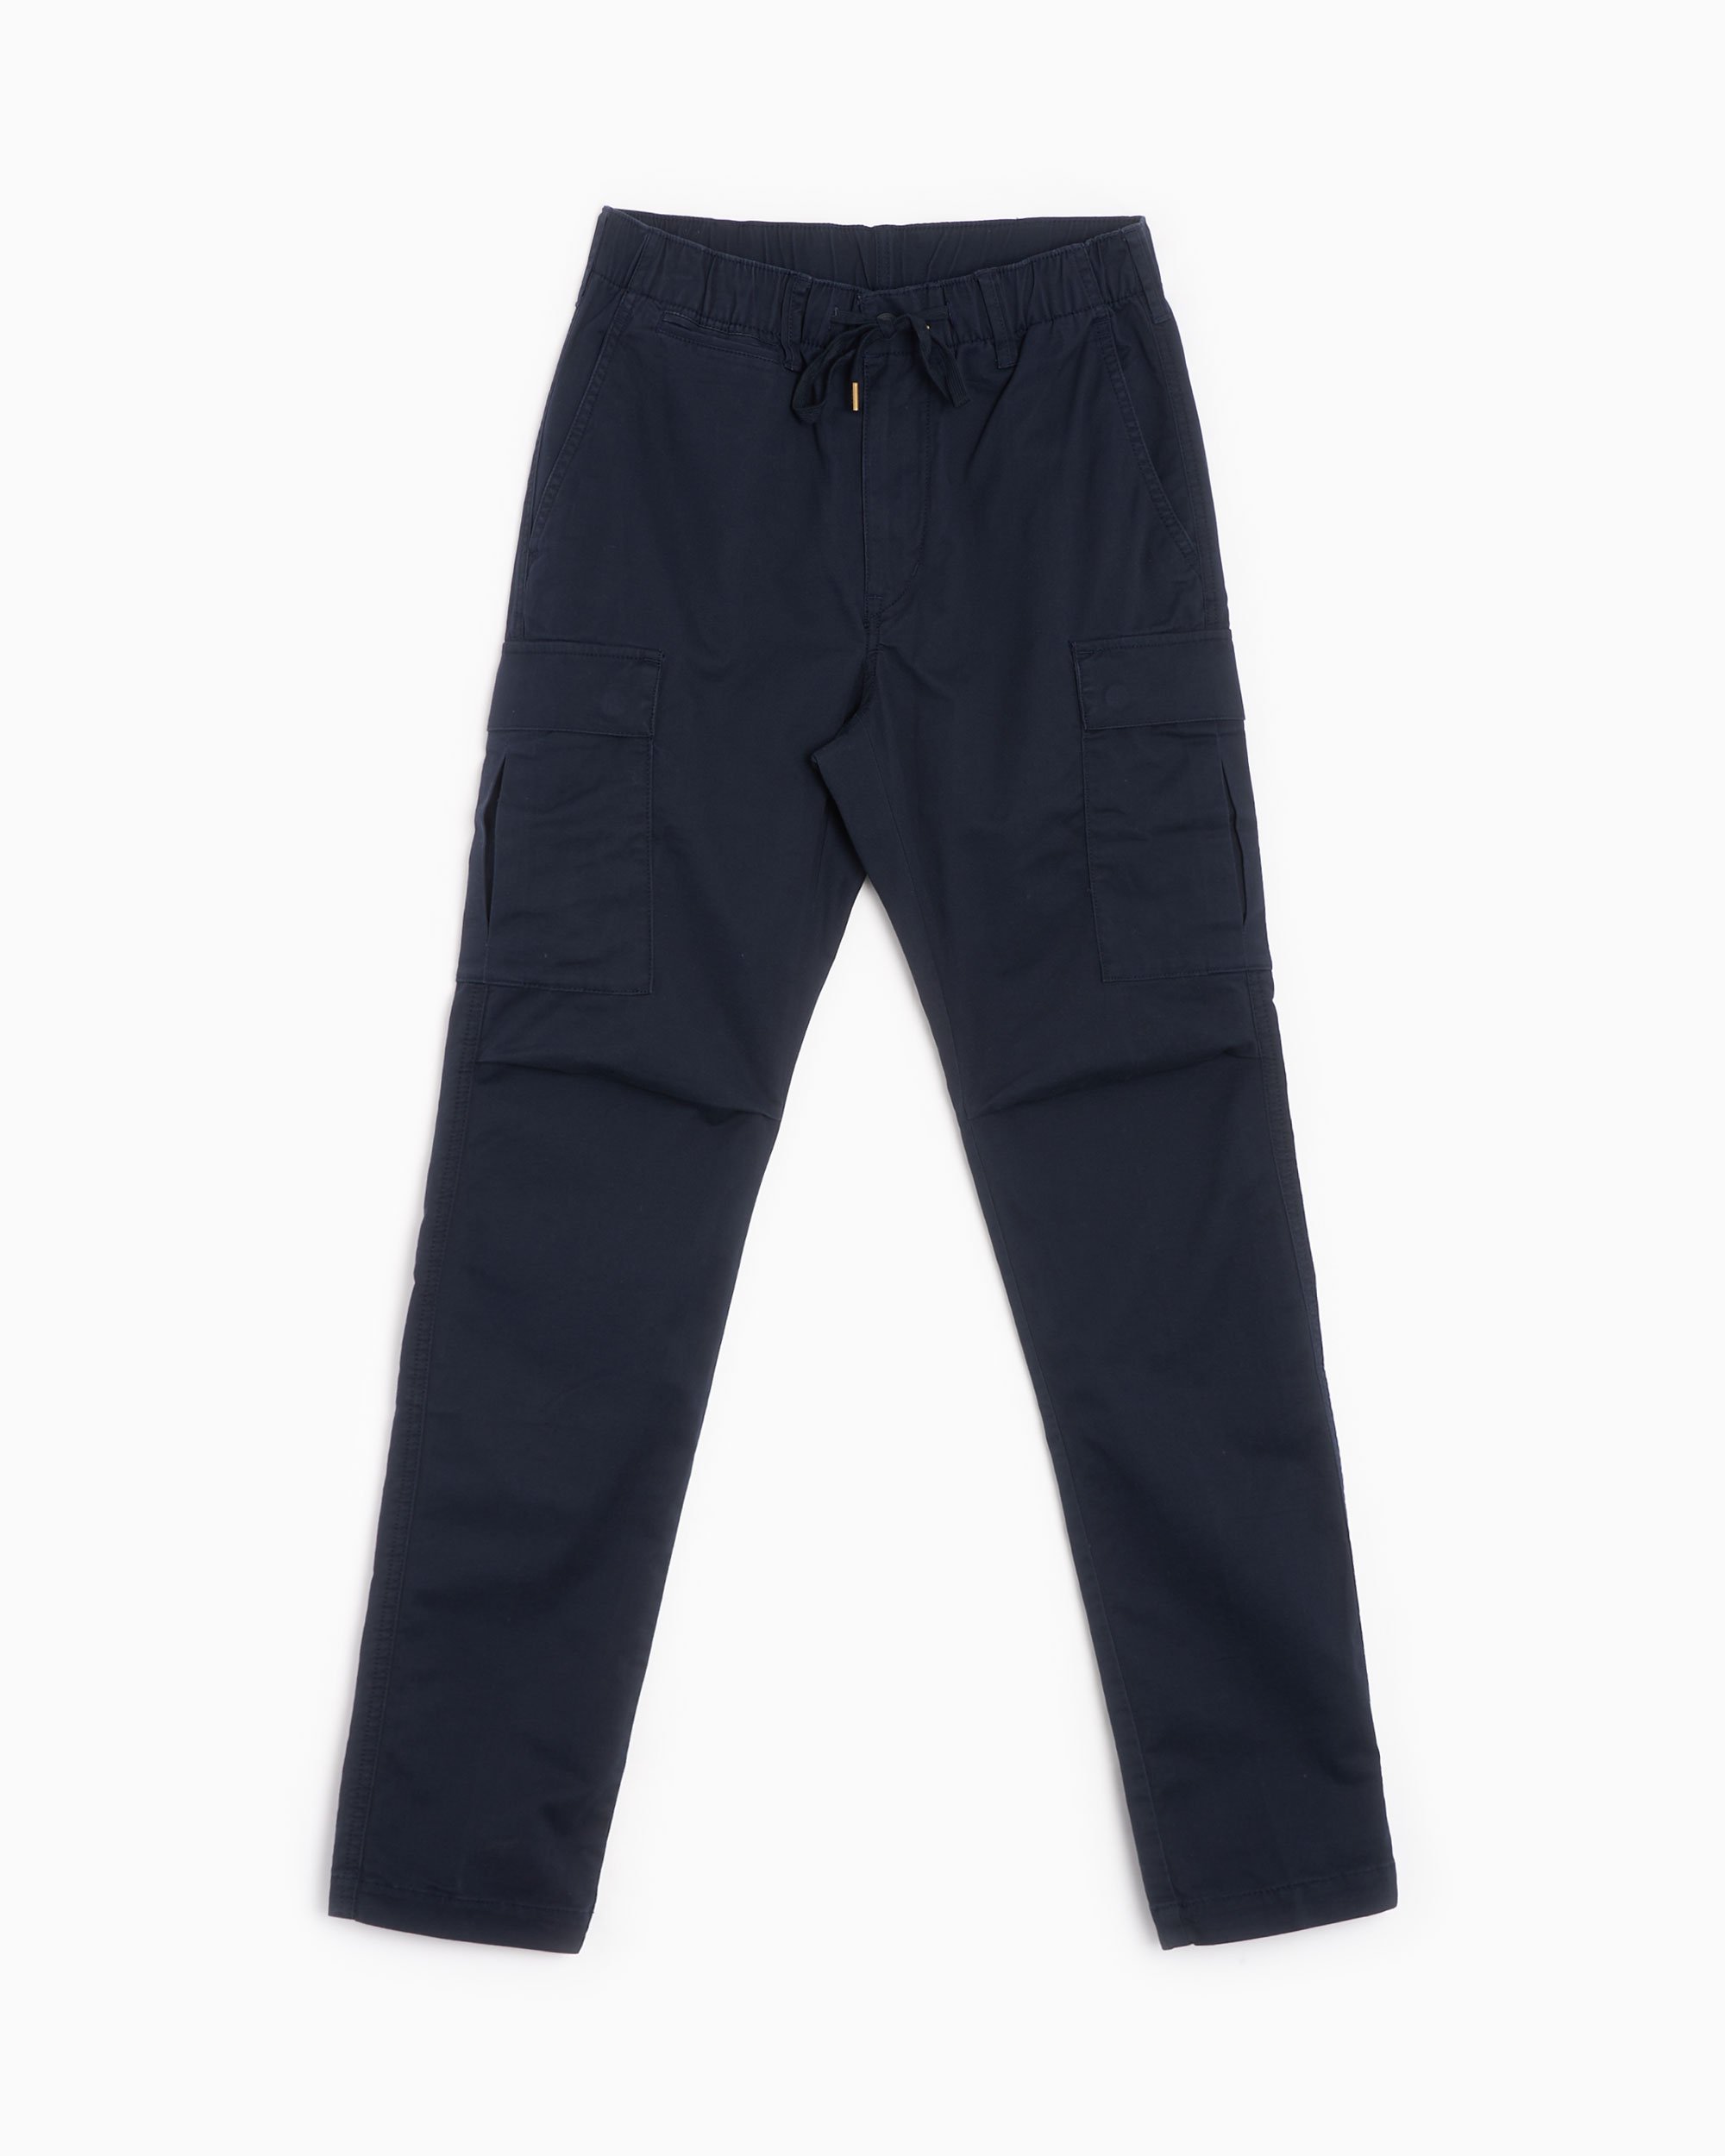 Polo Ralph Lauren Men's Cargo Pants Azul 710835172006